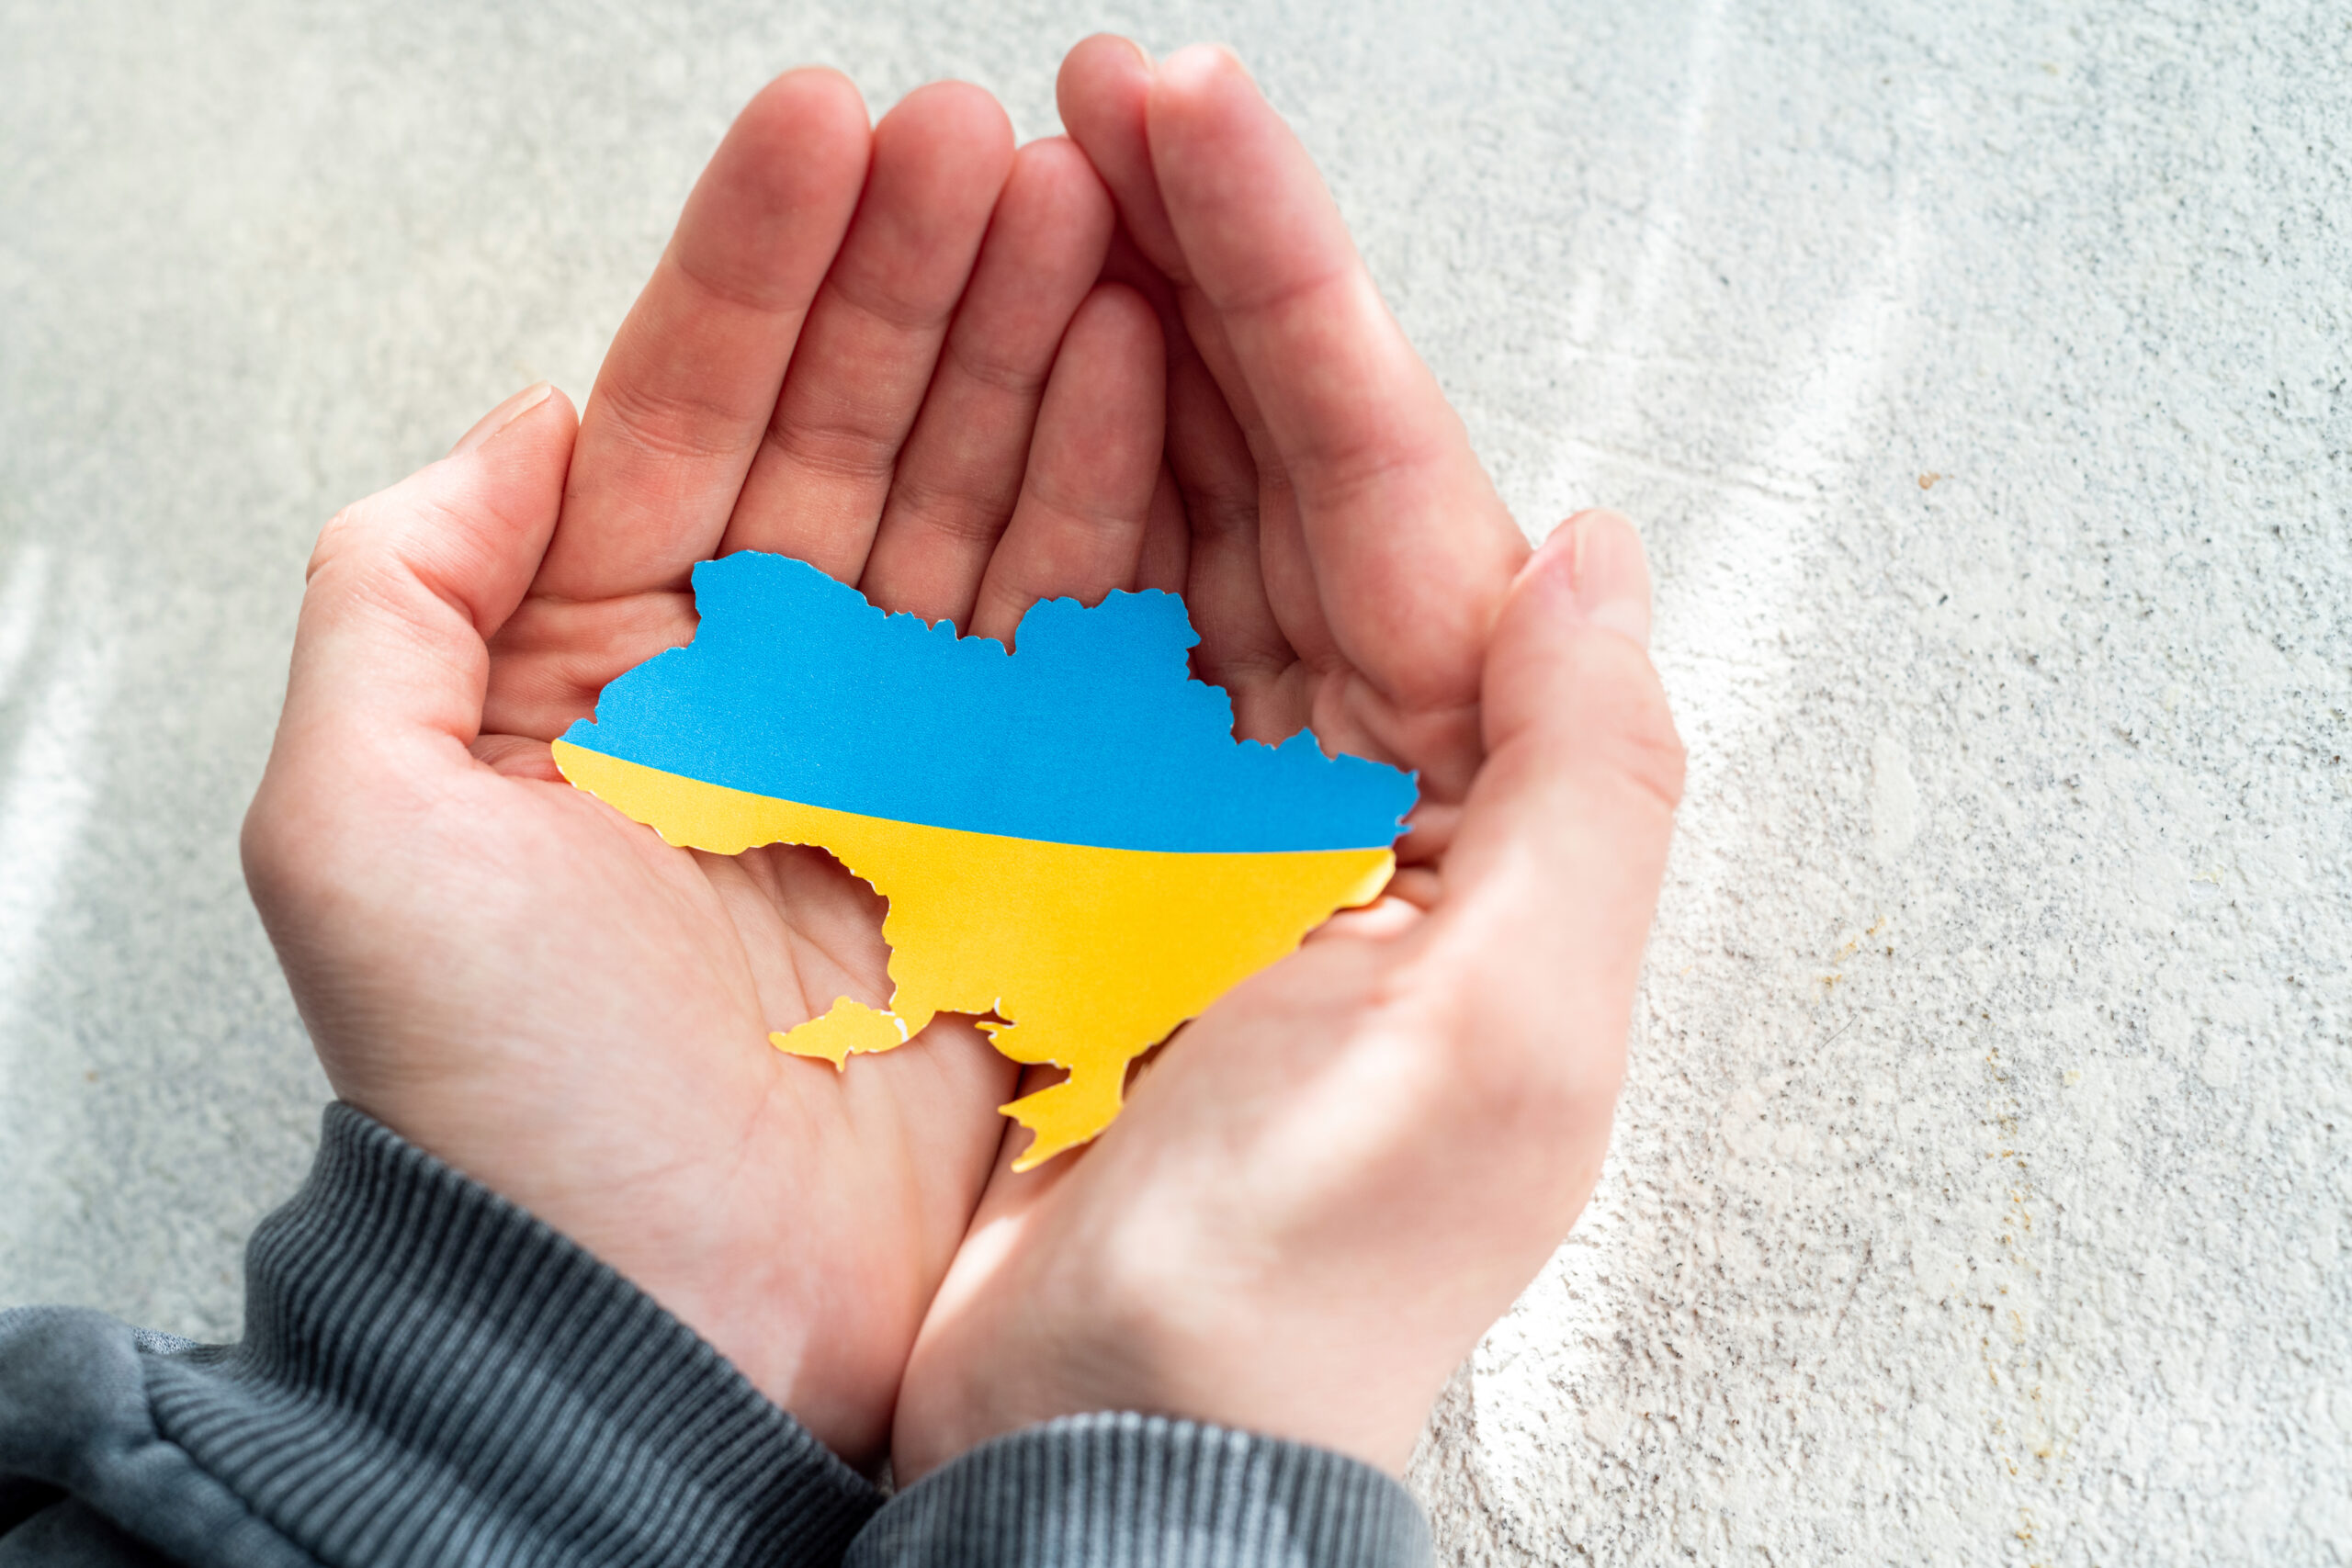 Das Symbolbild zeigt ein paar Hände, die einen Karton in Form und Farbe der Ukraine halten.